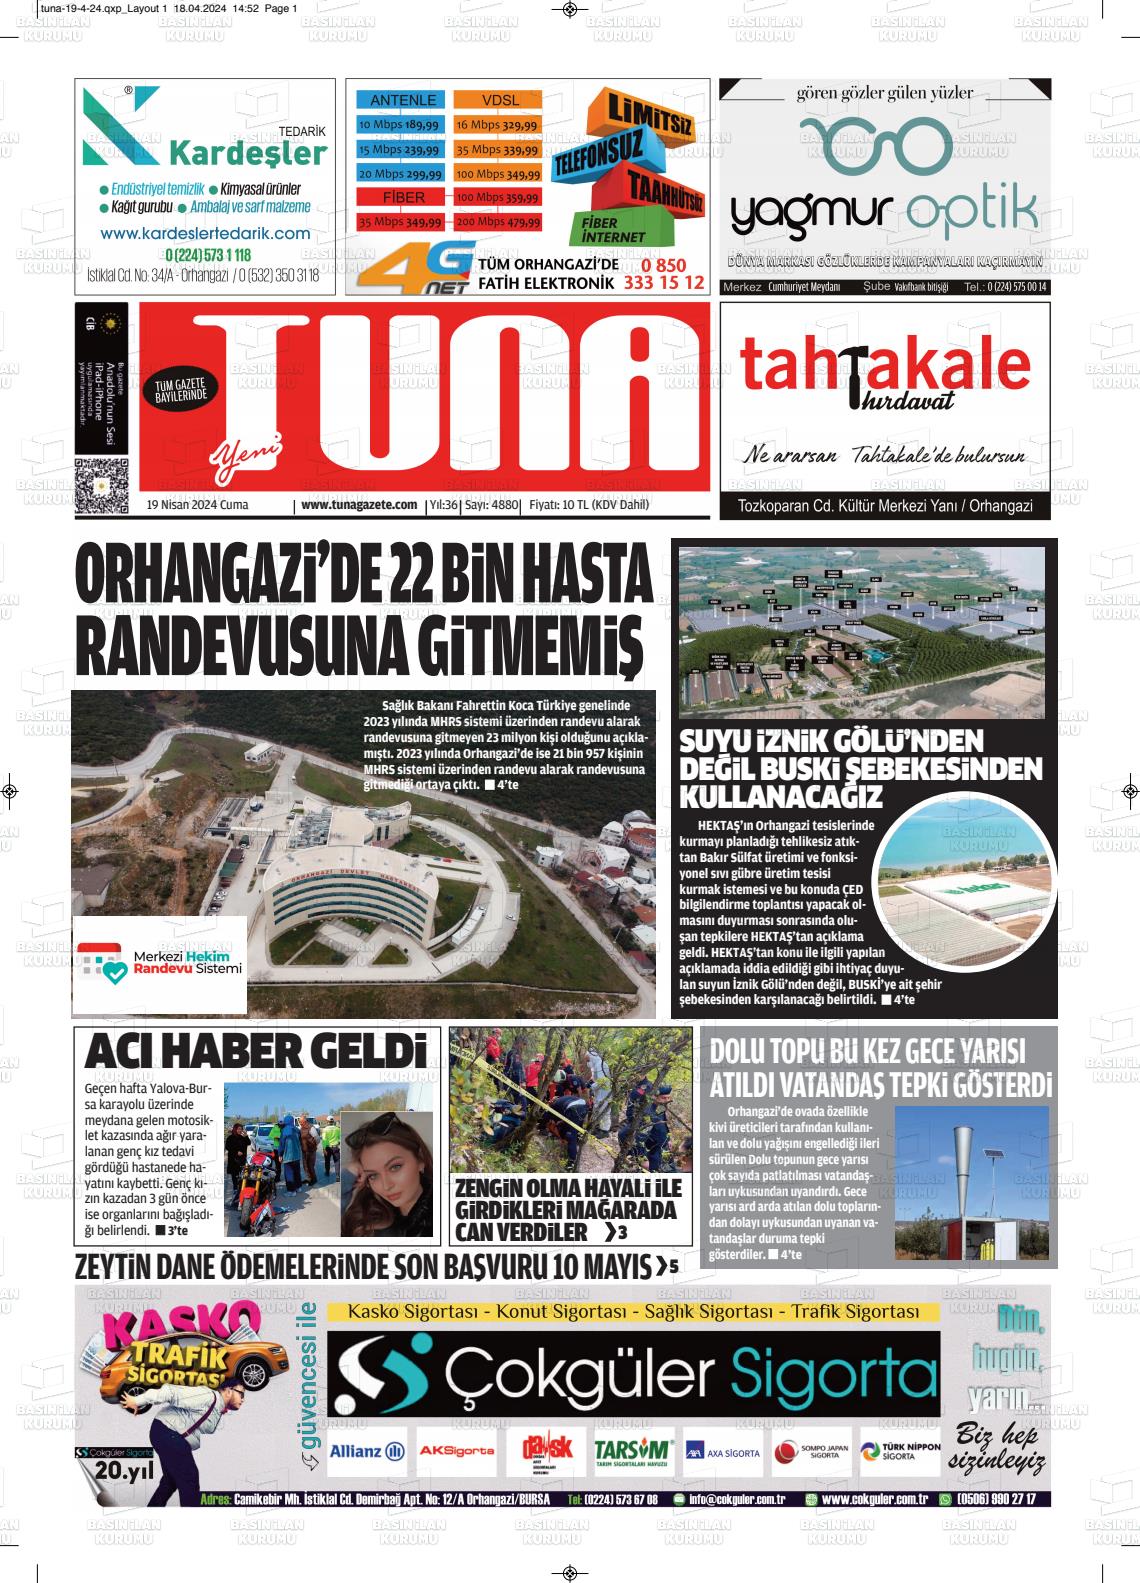 19 Nisan 2024 Tuna Gazete Manşeti